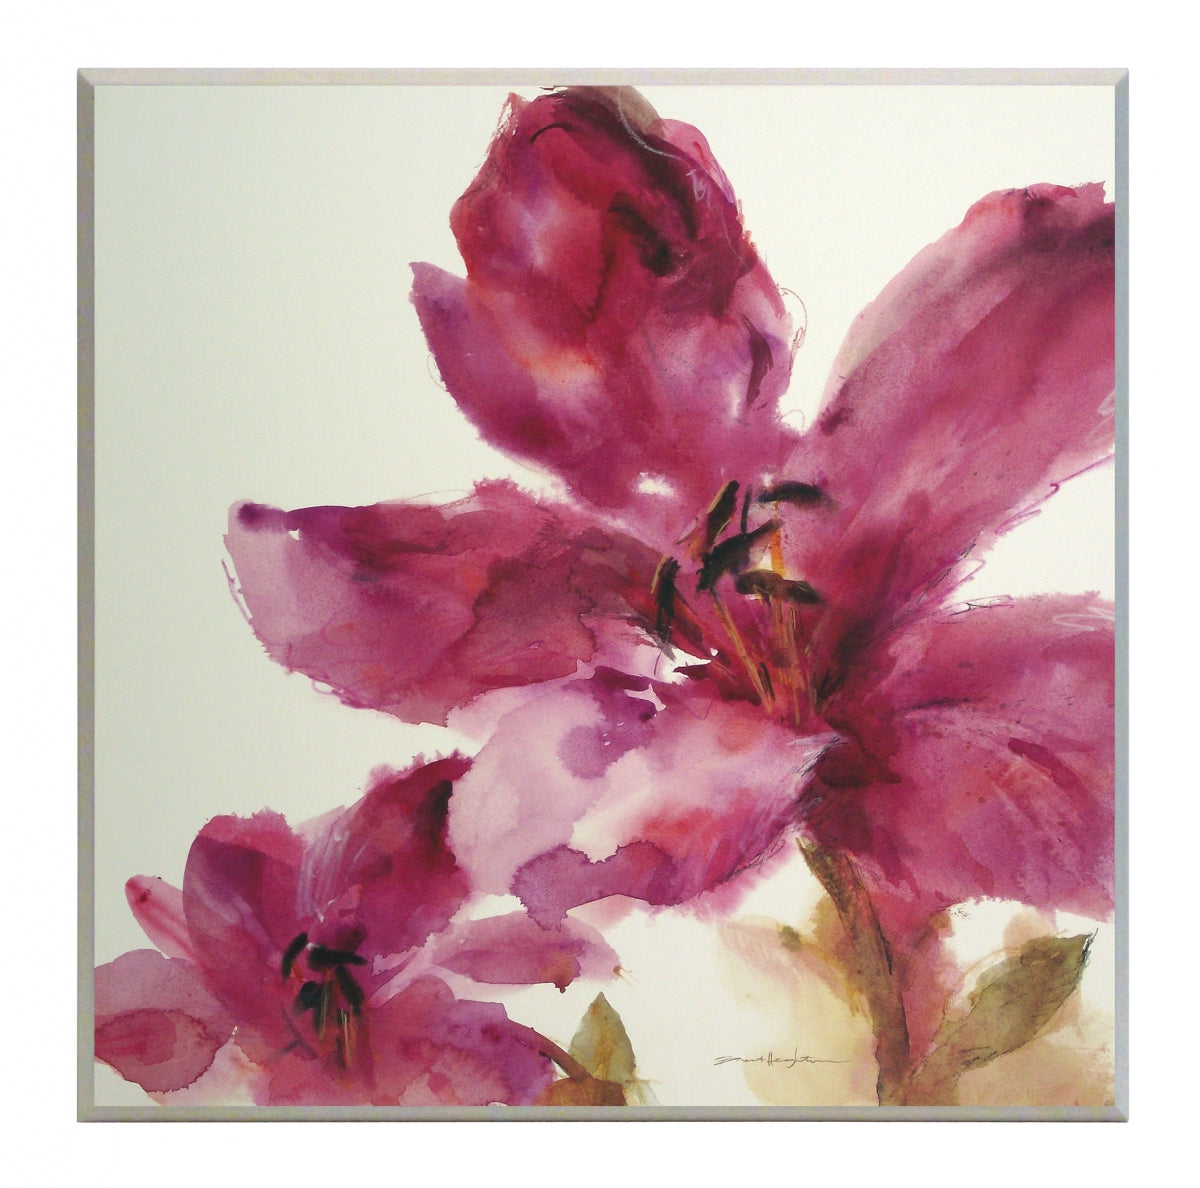 Obraz - Różowy akwarelowy kwiat - reprodukcja na płycie A5540 51x51 cm - Obrazy Reprodukcje Ramy | ergopaul.pl